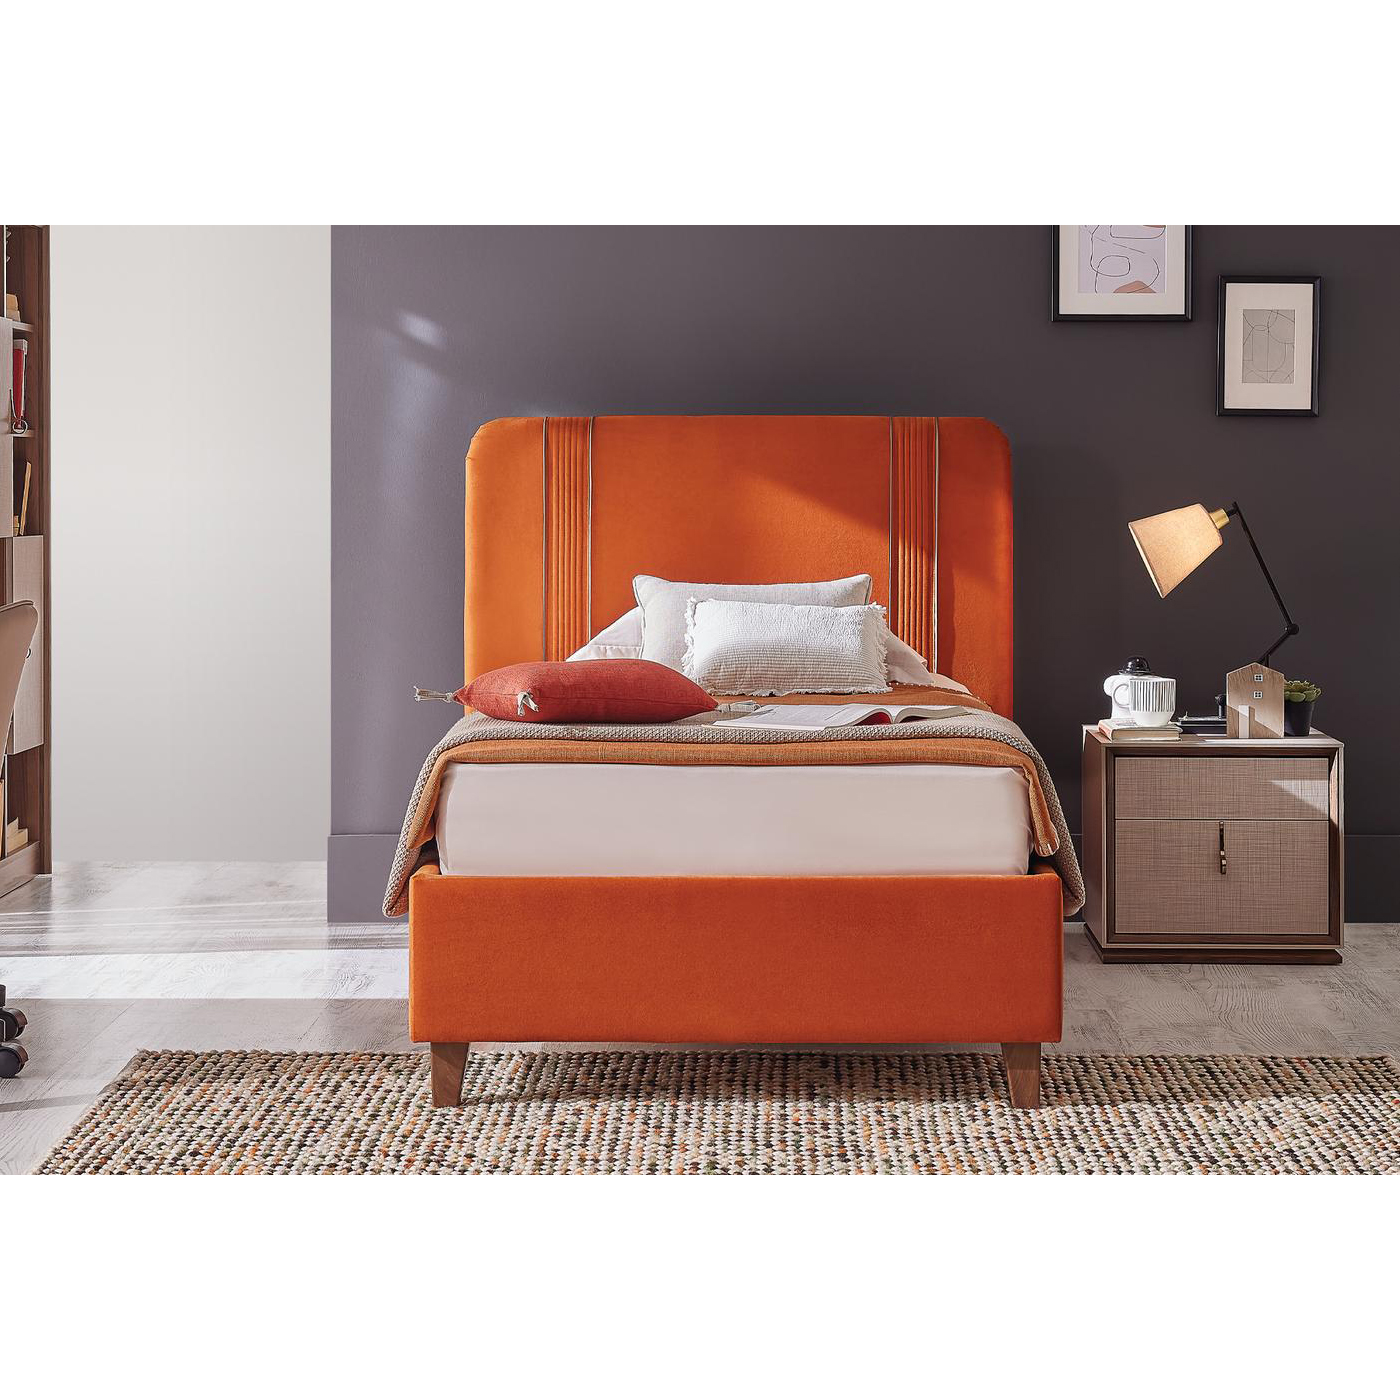 Кровать Enza Home Netha, односпальная, с подъемным механизмом, 120х200 см, ткань 22108 Orange07.110.0583.0460.0003.0000.221+ 07.352.0583.0460.0060.0000.221